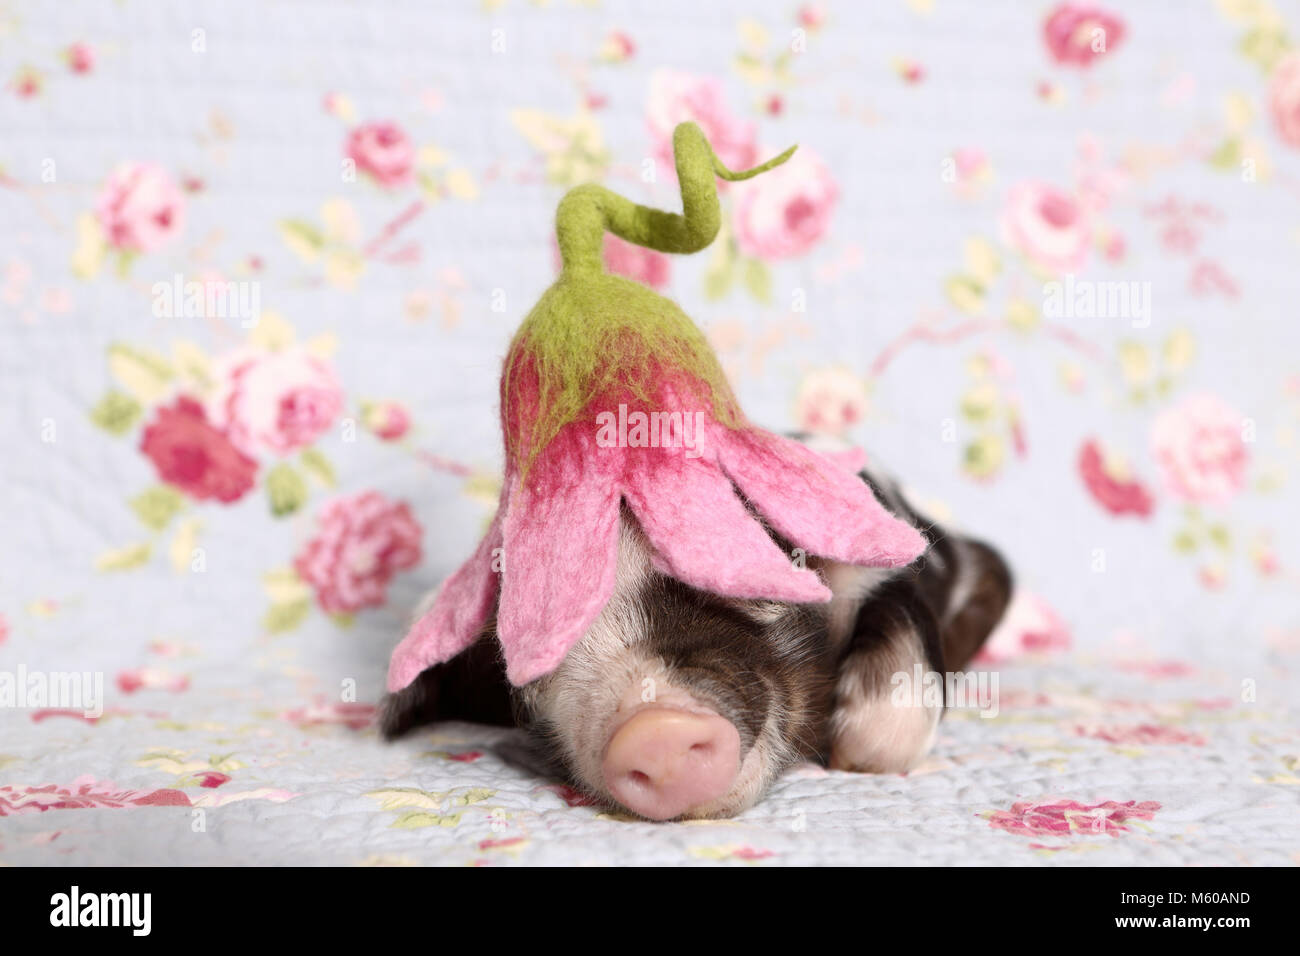 Suini domestici, Turopolje x ?. Maialino (1 settimana fa) indossando un fiore a forma di cappello, dormendo. Studio Immagine contro uno sfondo blu con fiori di rose stampa. Germania Foto Stock